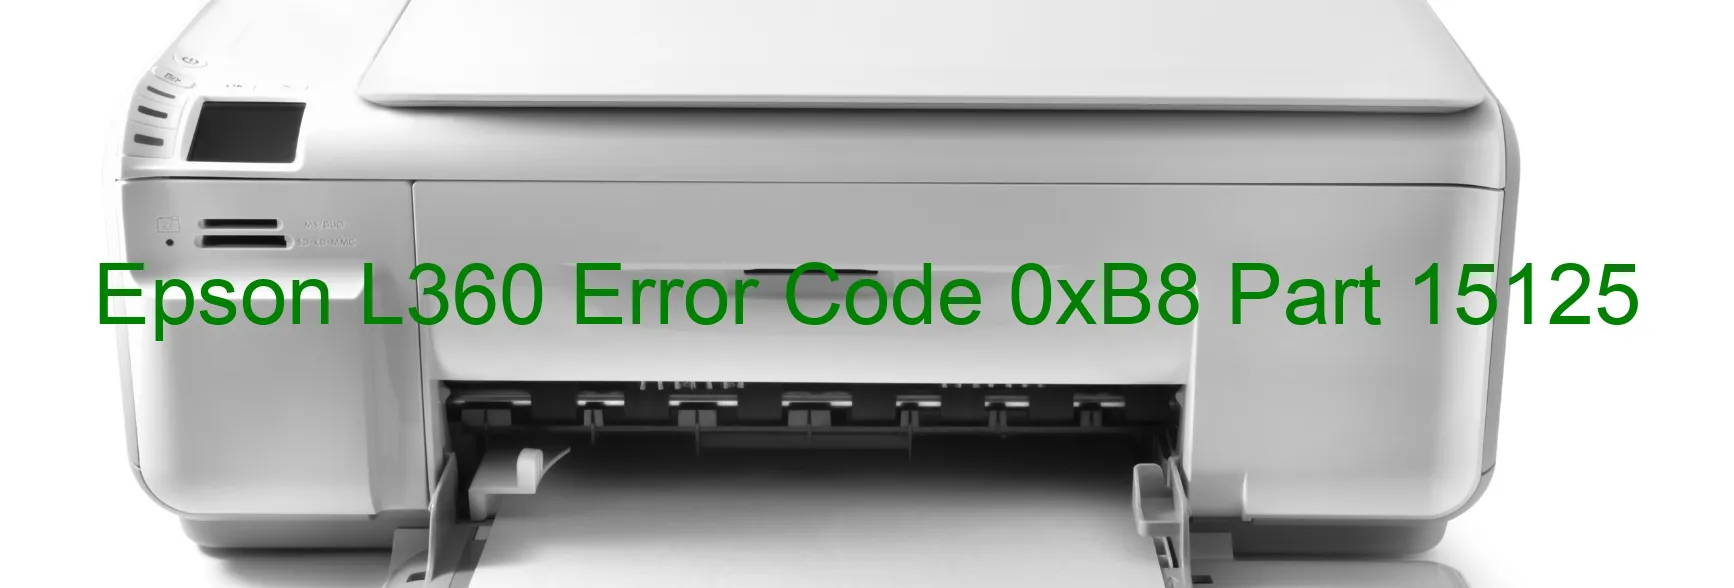 Epson L360 Error Code 0xB8 Part 15125